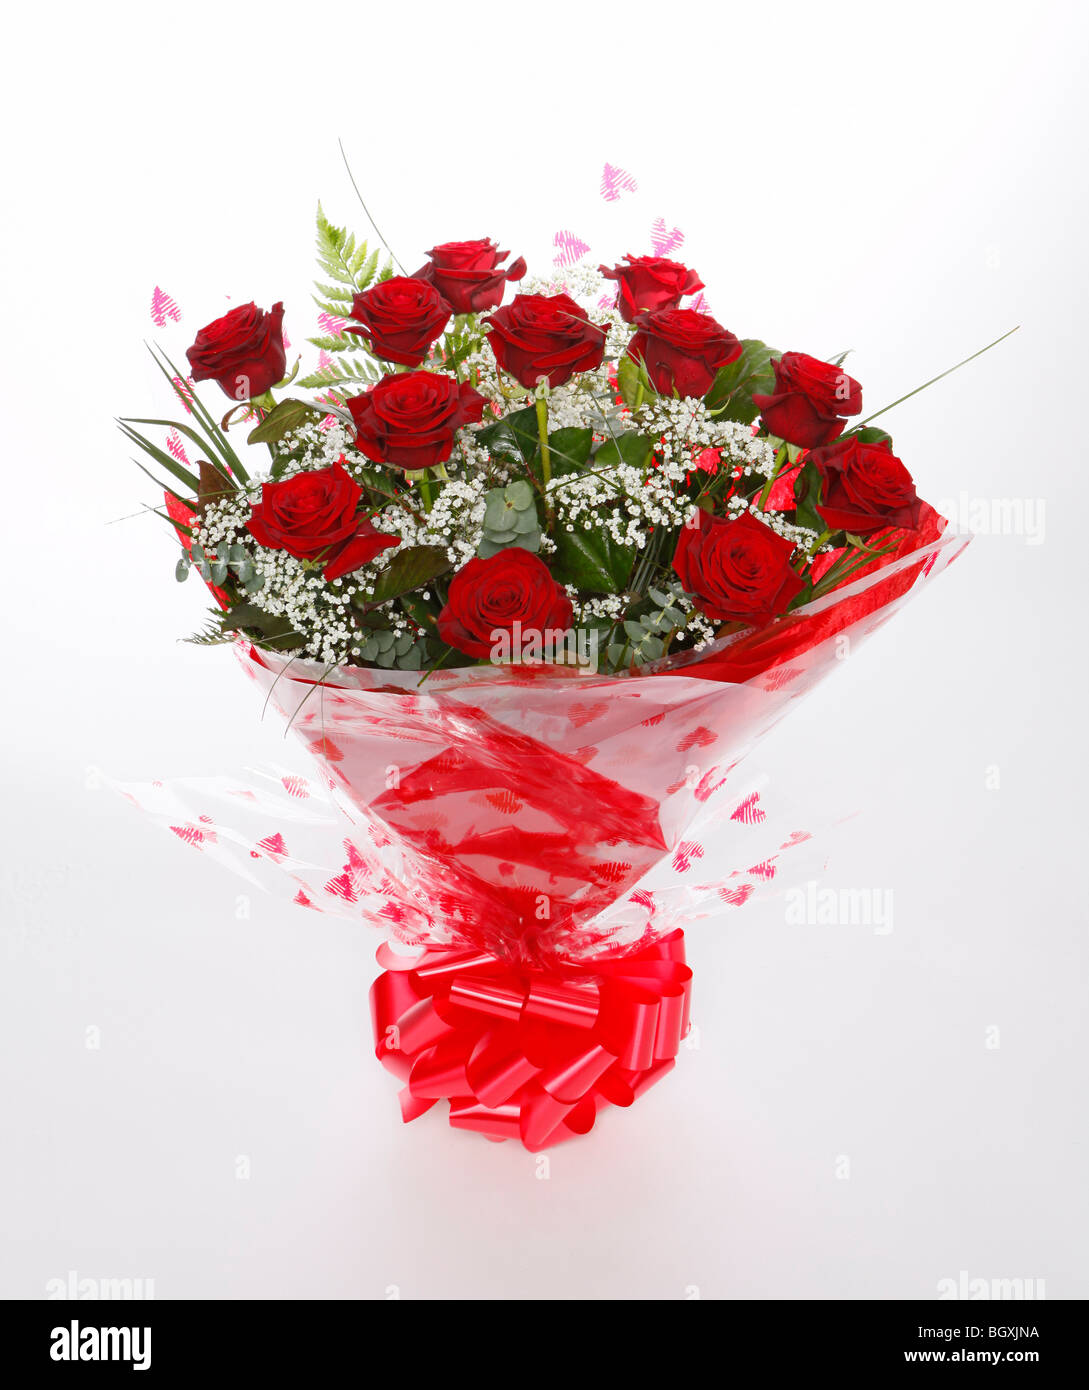 Une douzaine de roses rouges pour la Saint Valentin. Des fleurs sur un fond blanc Banque D'Images